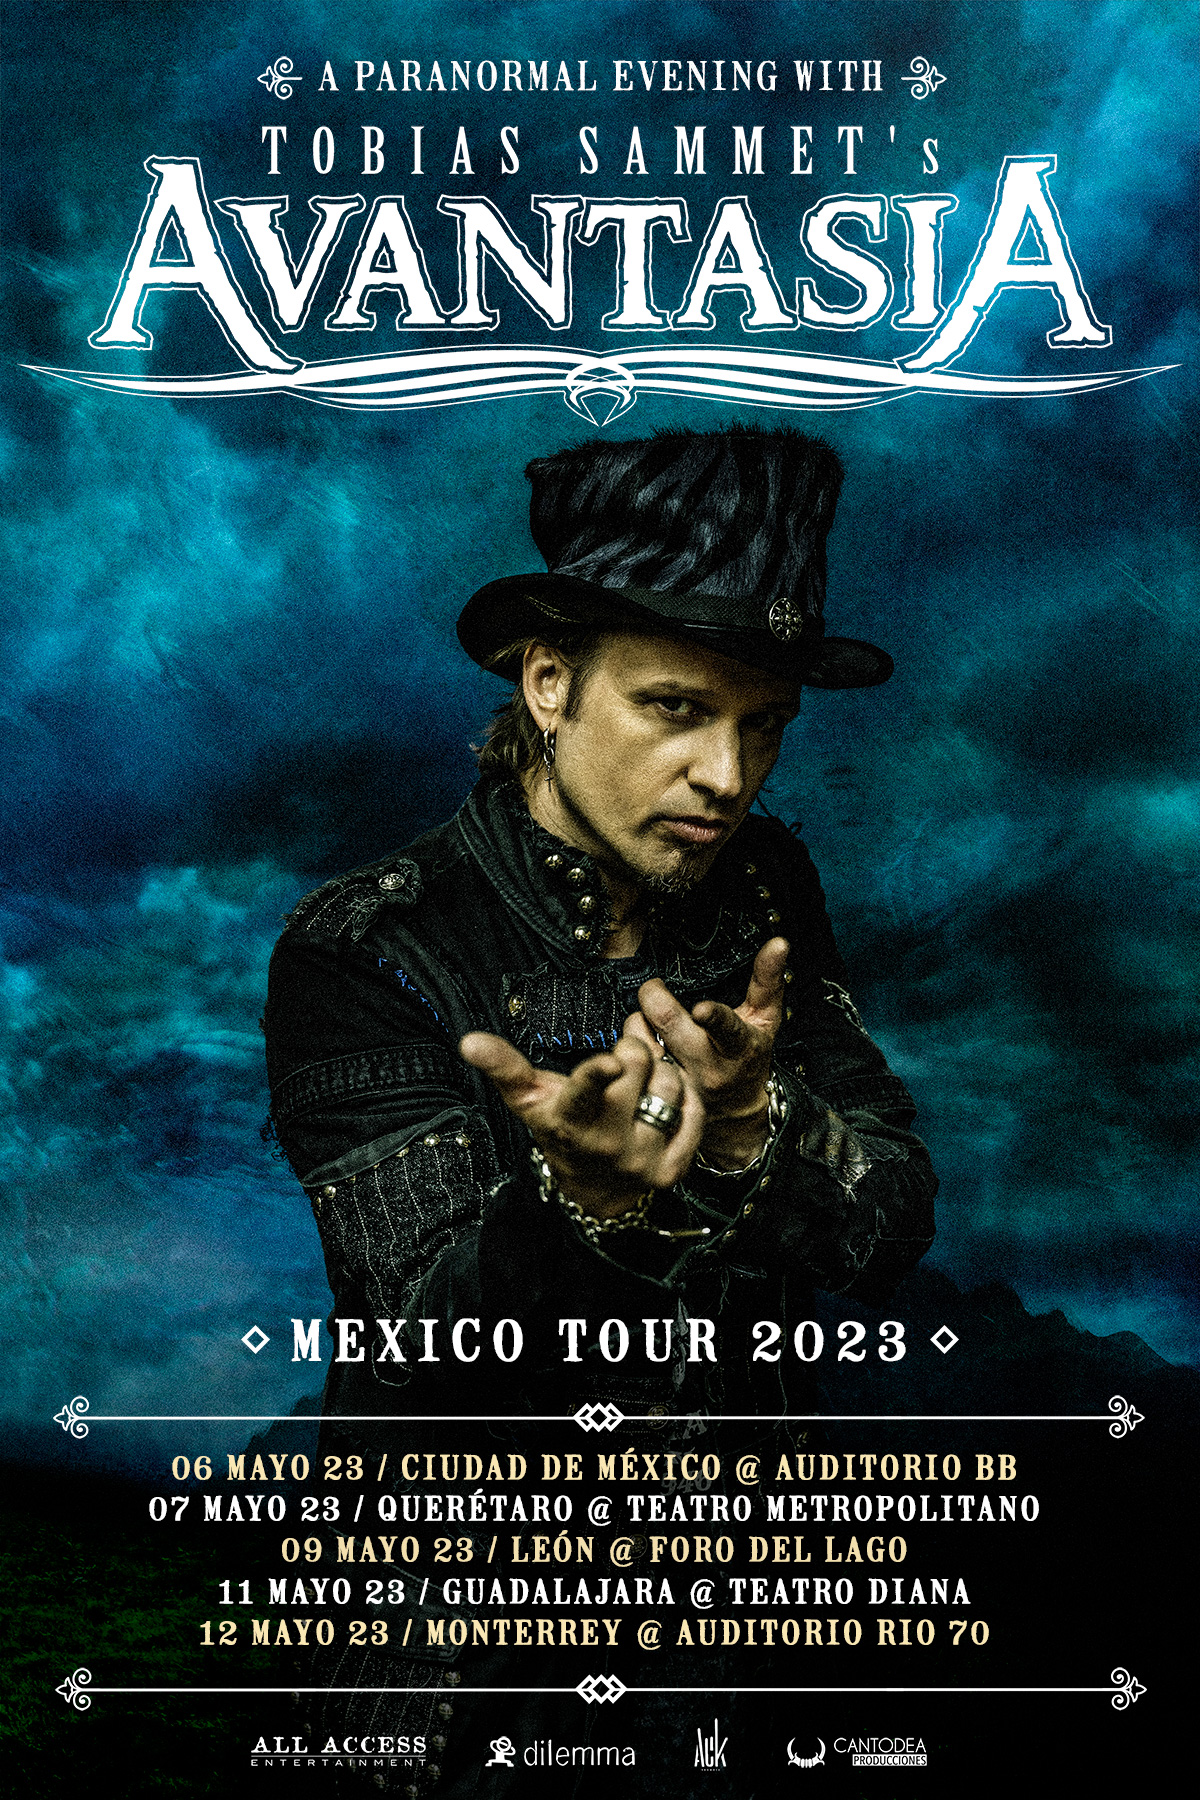 A Paranormal Evening With AVANTASIA Mexico Tour 2023